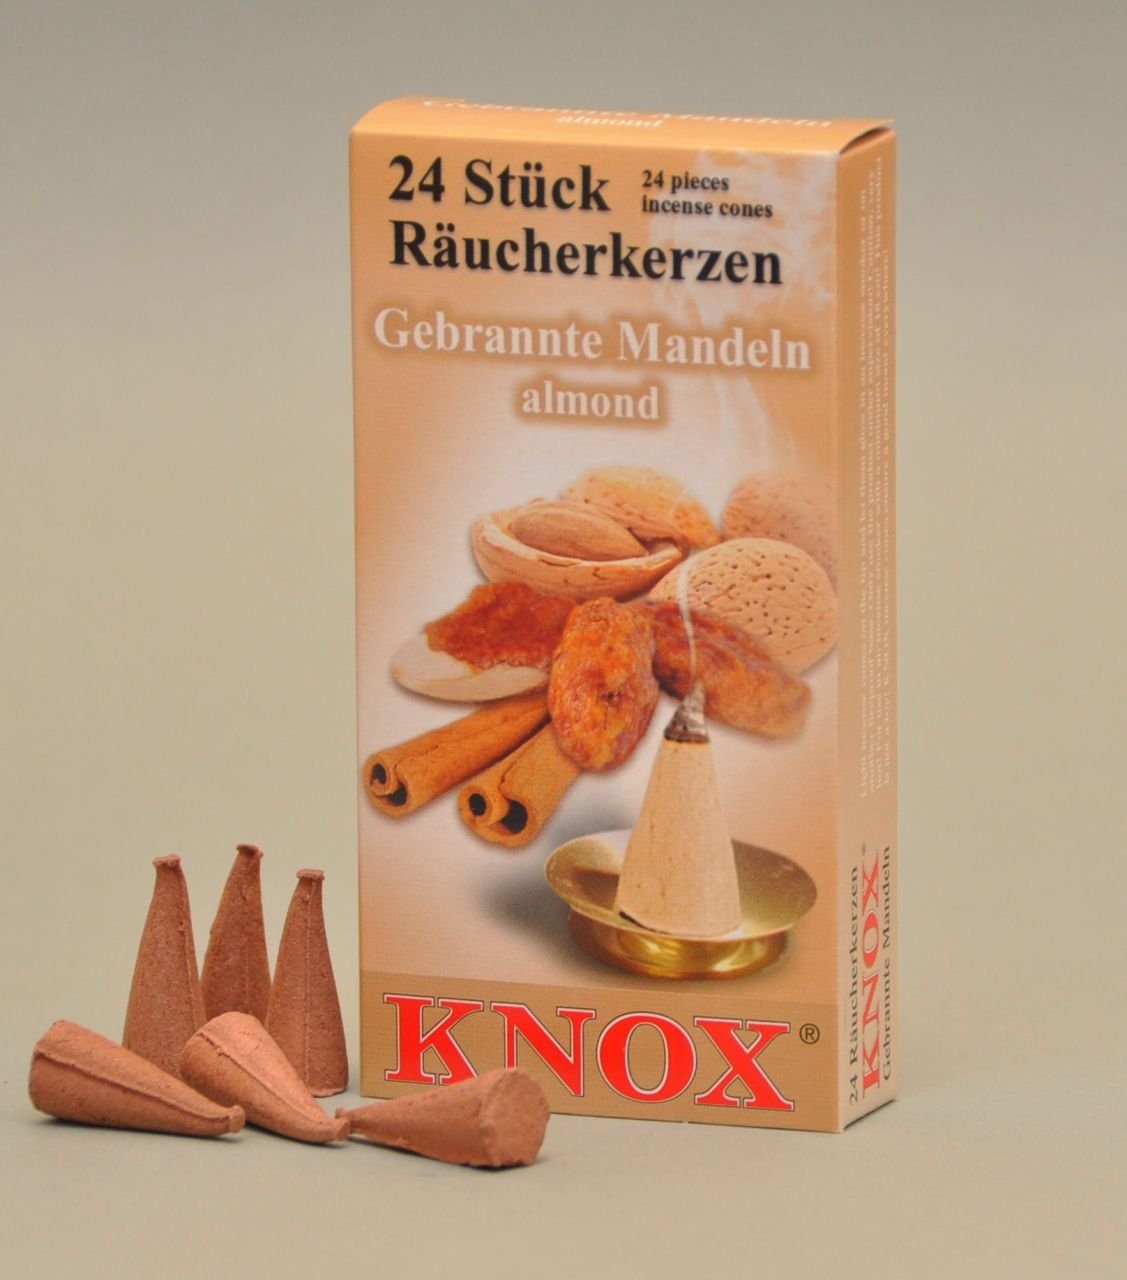 KNOX Räucherhaus - Knox Mandeln Gebrannte 24 Räucherkerzen Stück